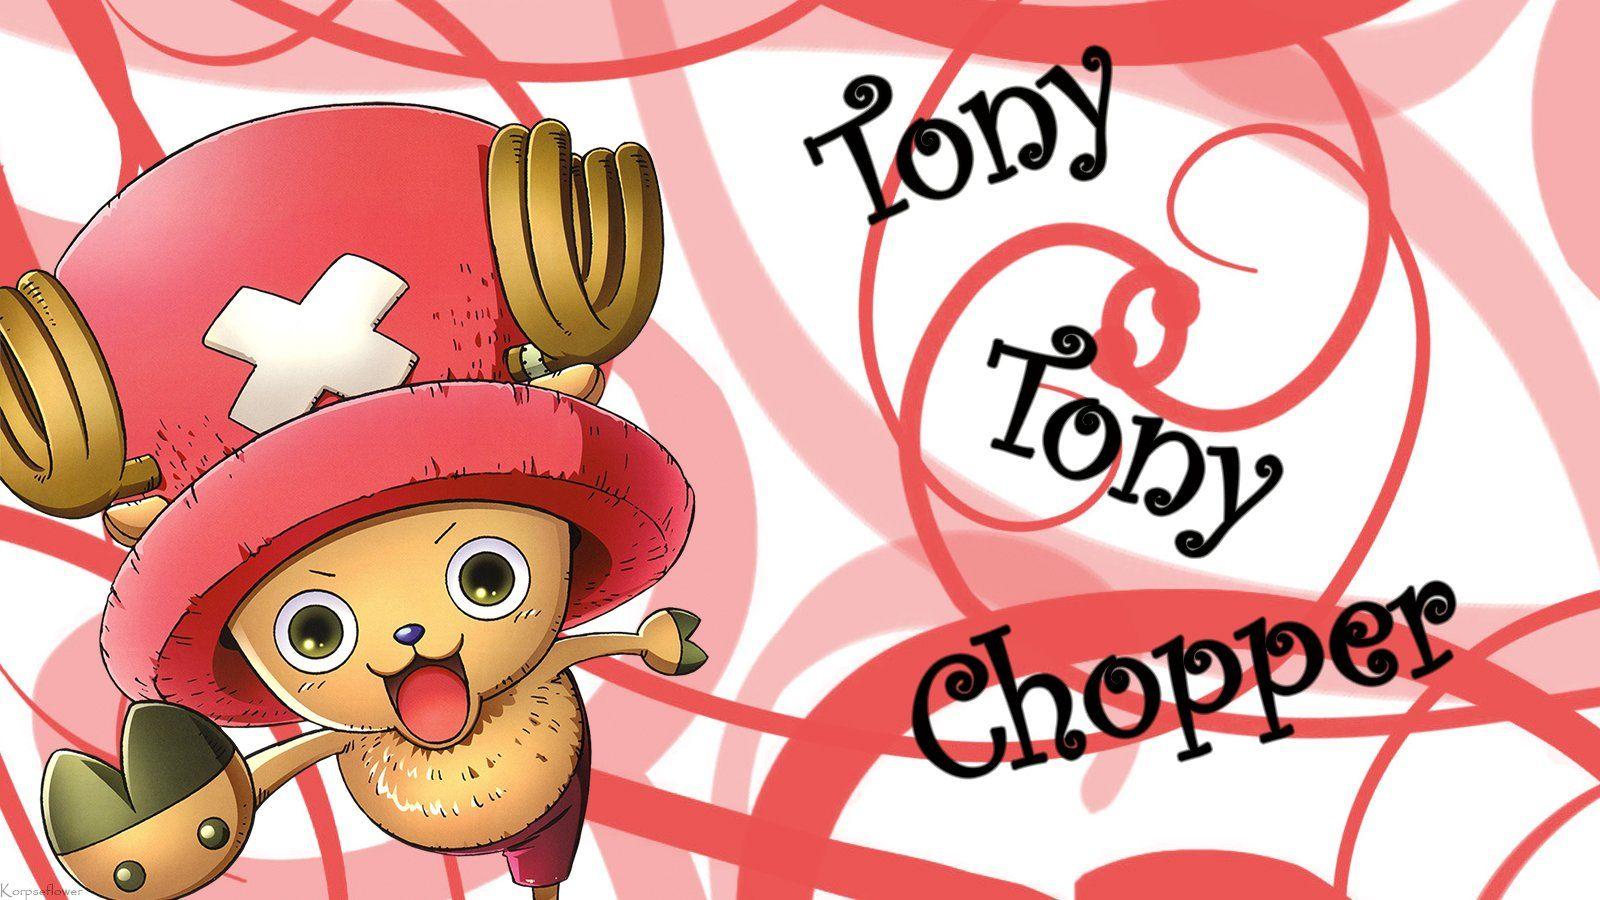 Tony Tony Chopper Wallpaper